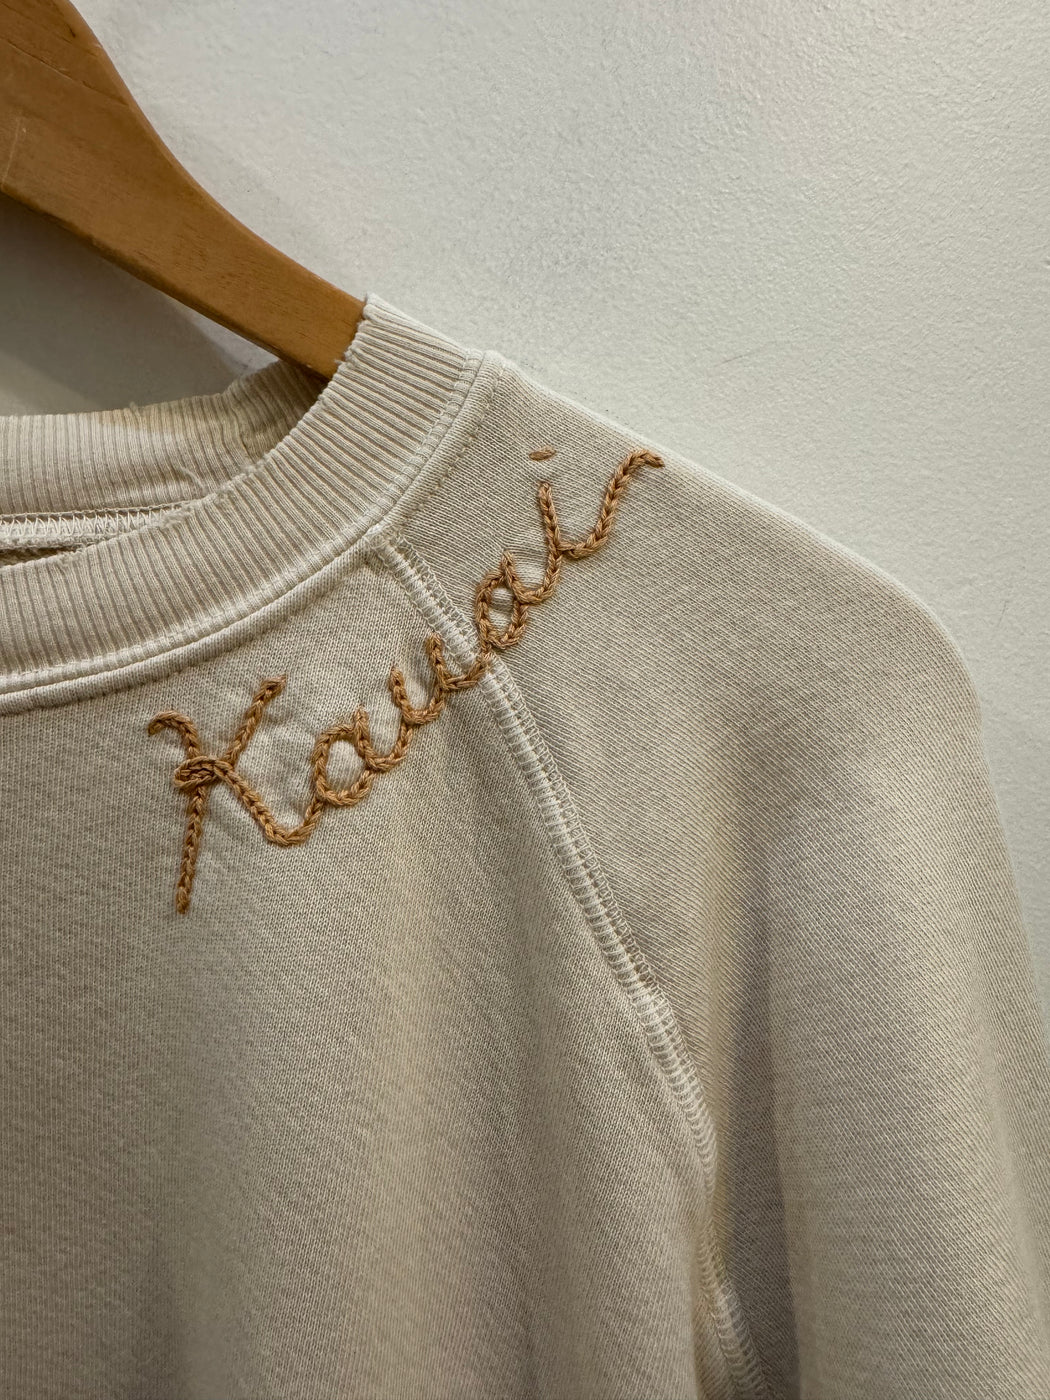 Kauai Embroidered Sweatshirts